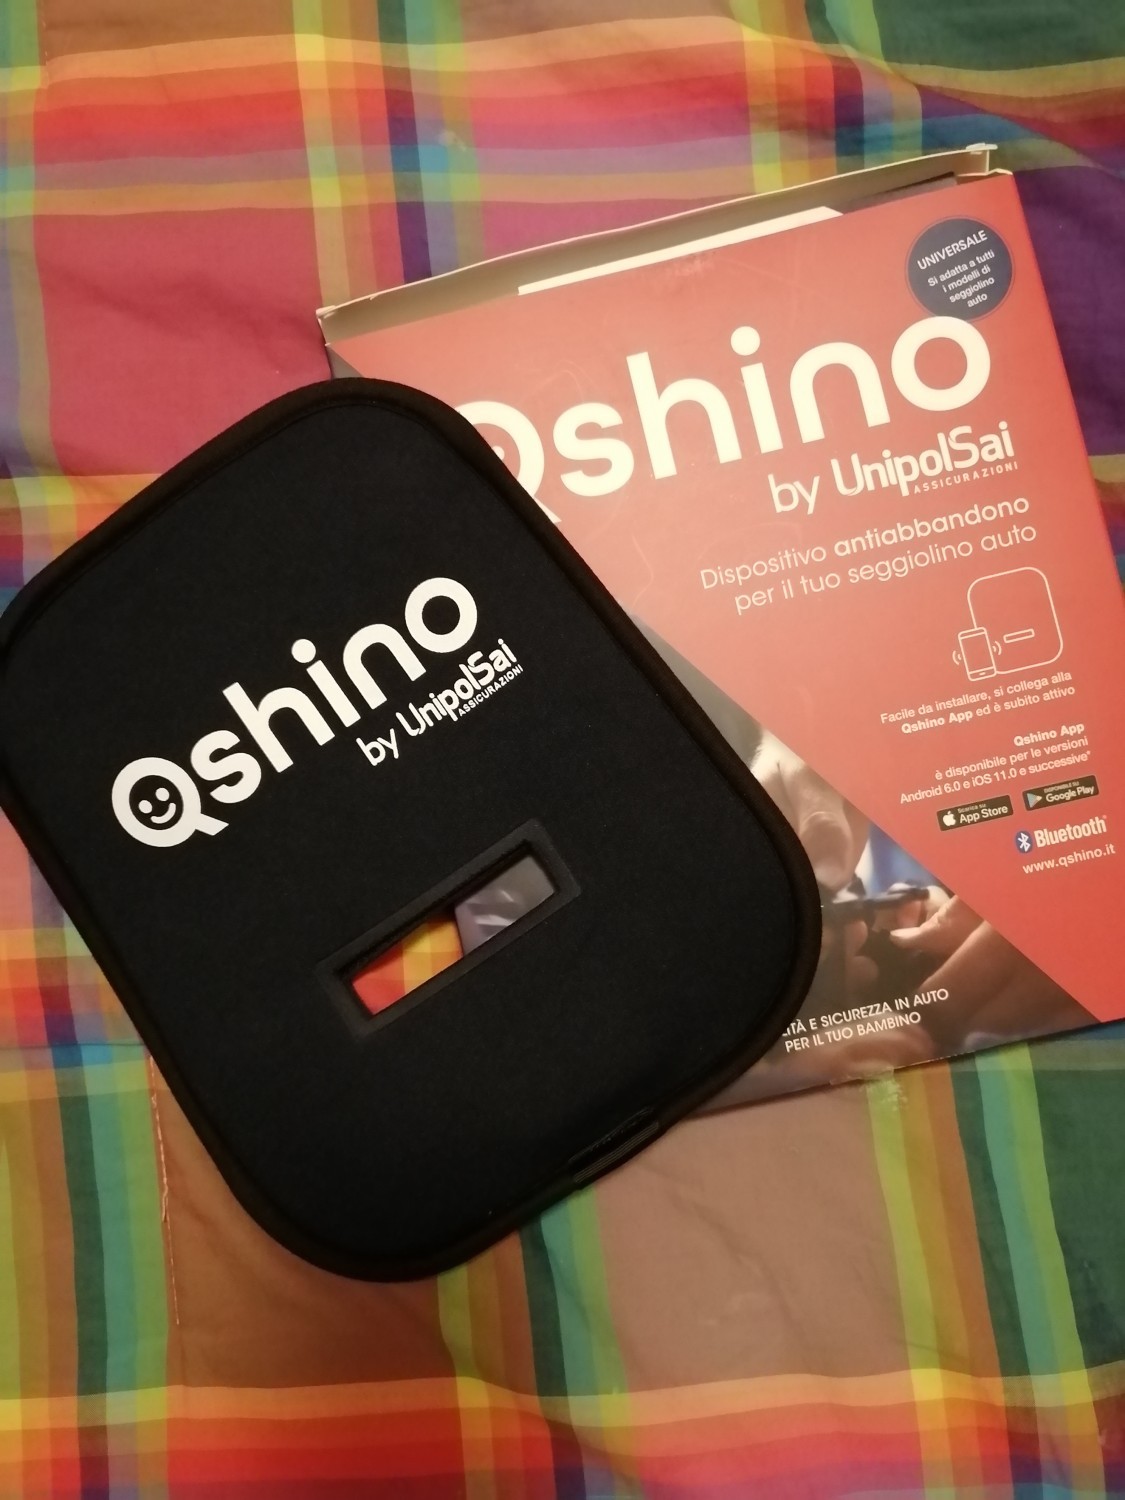 Qshino recensione